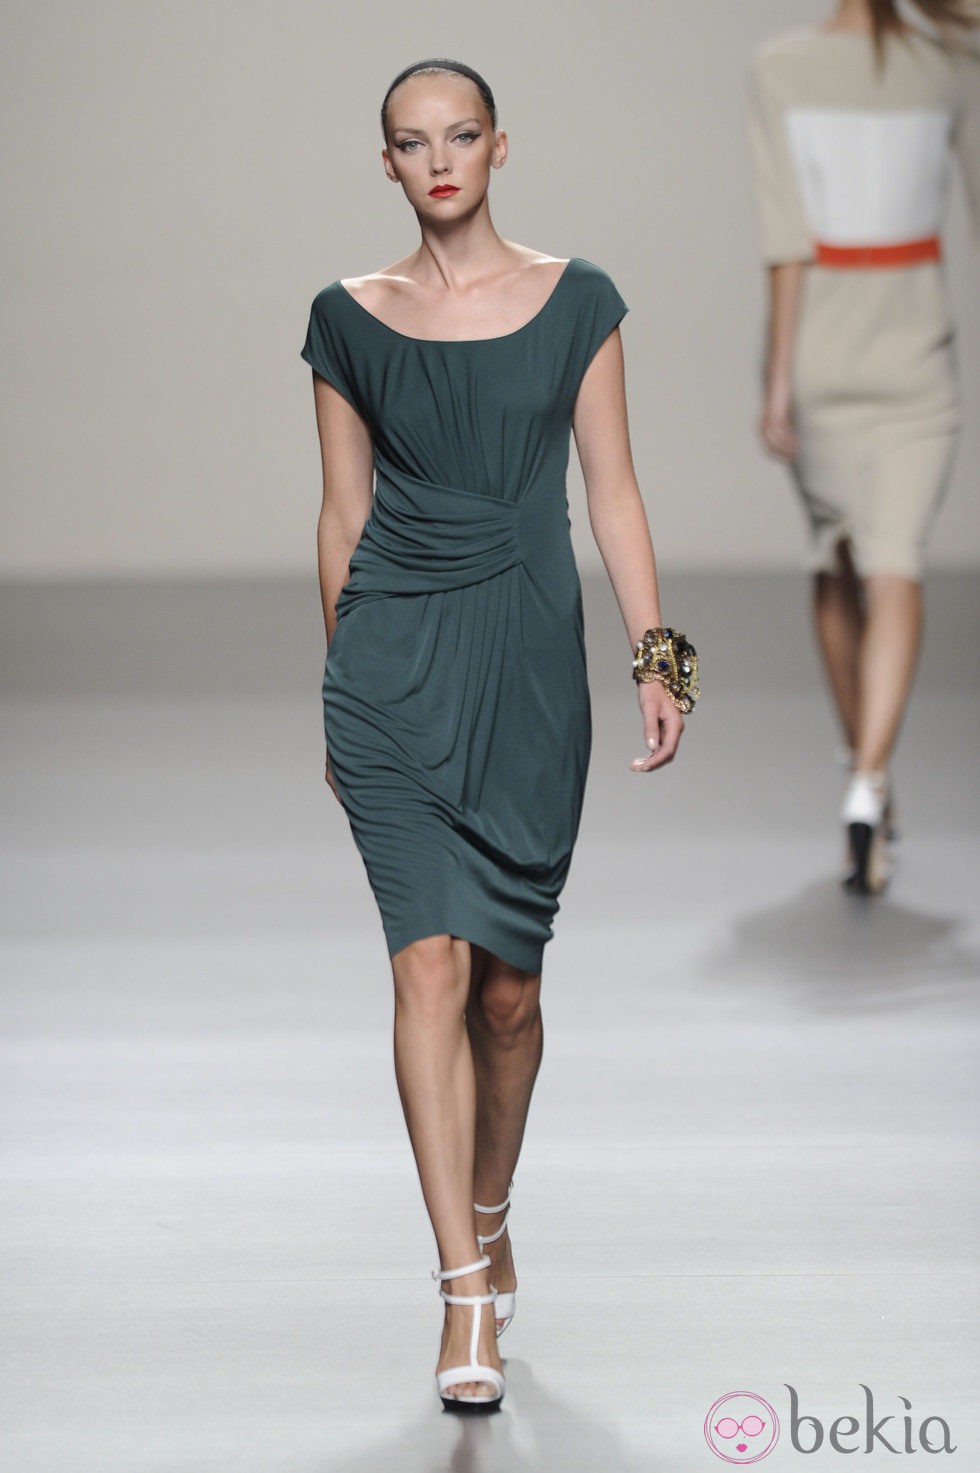 Vestido corto con pliegues de la colección primavera-verano 2013 de Roberto Torretta